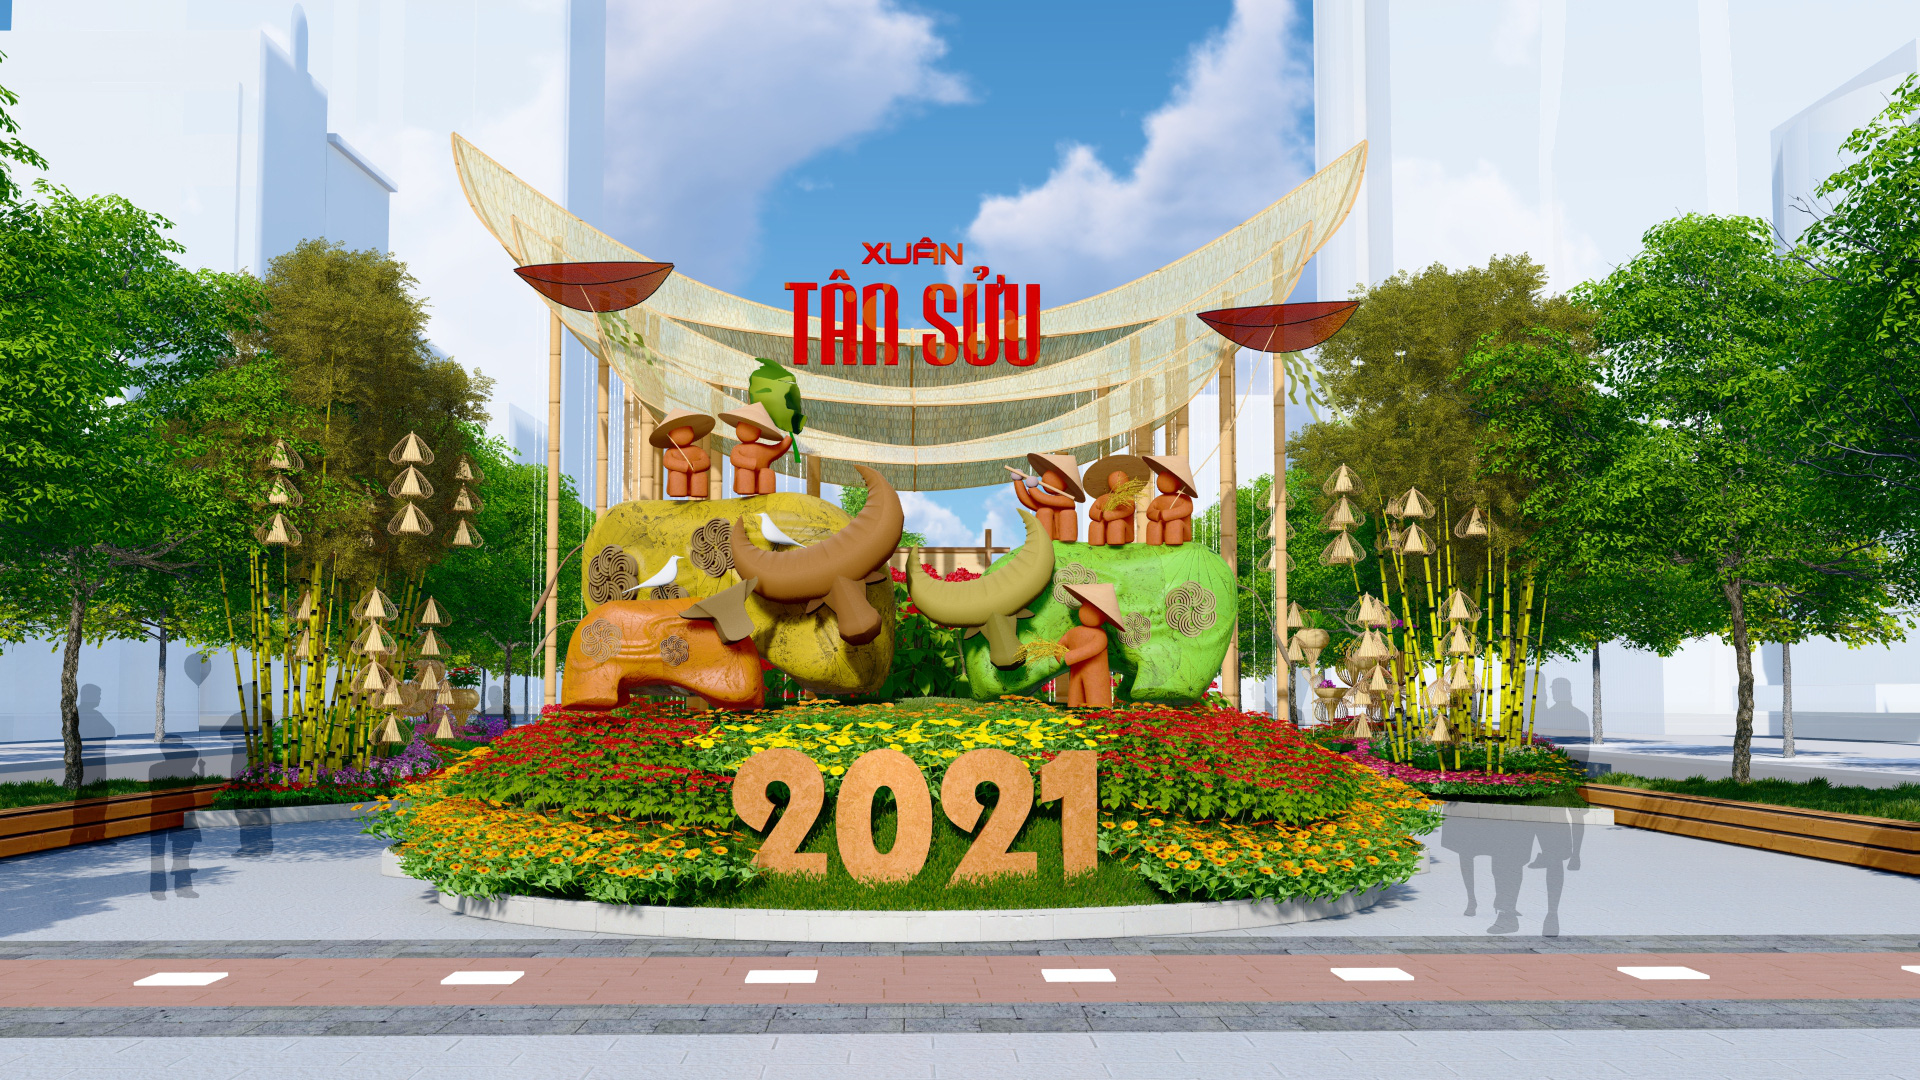 Thiệp chúc mừng năm mới Tân Sửu 2021 với các thiết kế về hình ảnh linh vật  của năm 2021 Hình ảnh trâu vàng trong thiệp chúc   Thiệp Chúc mừng